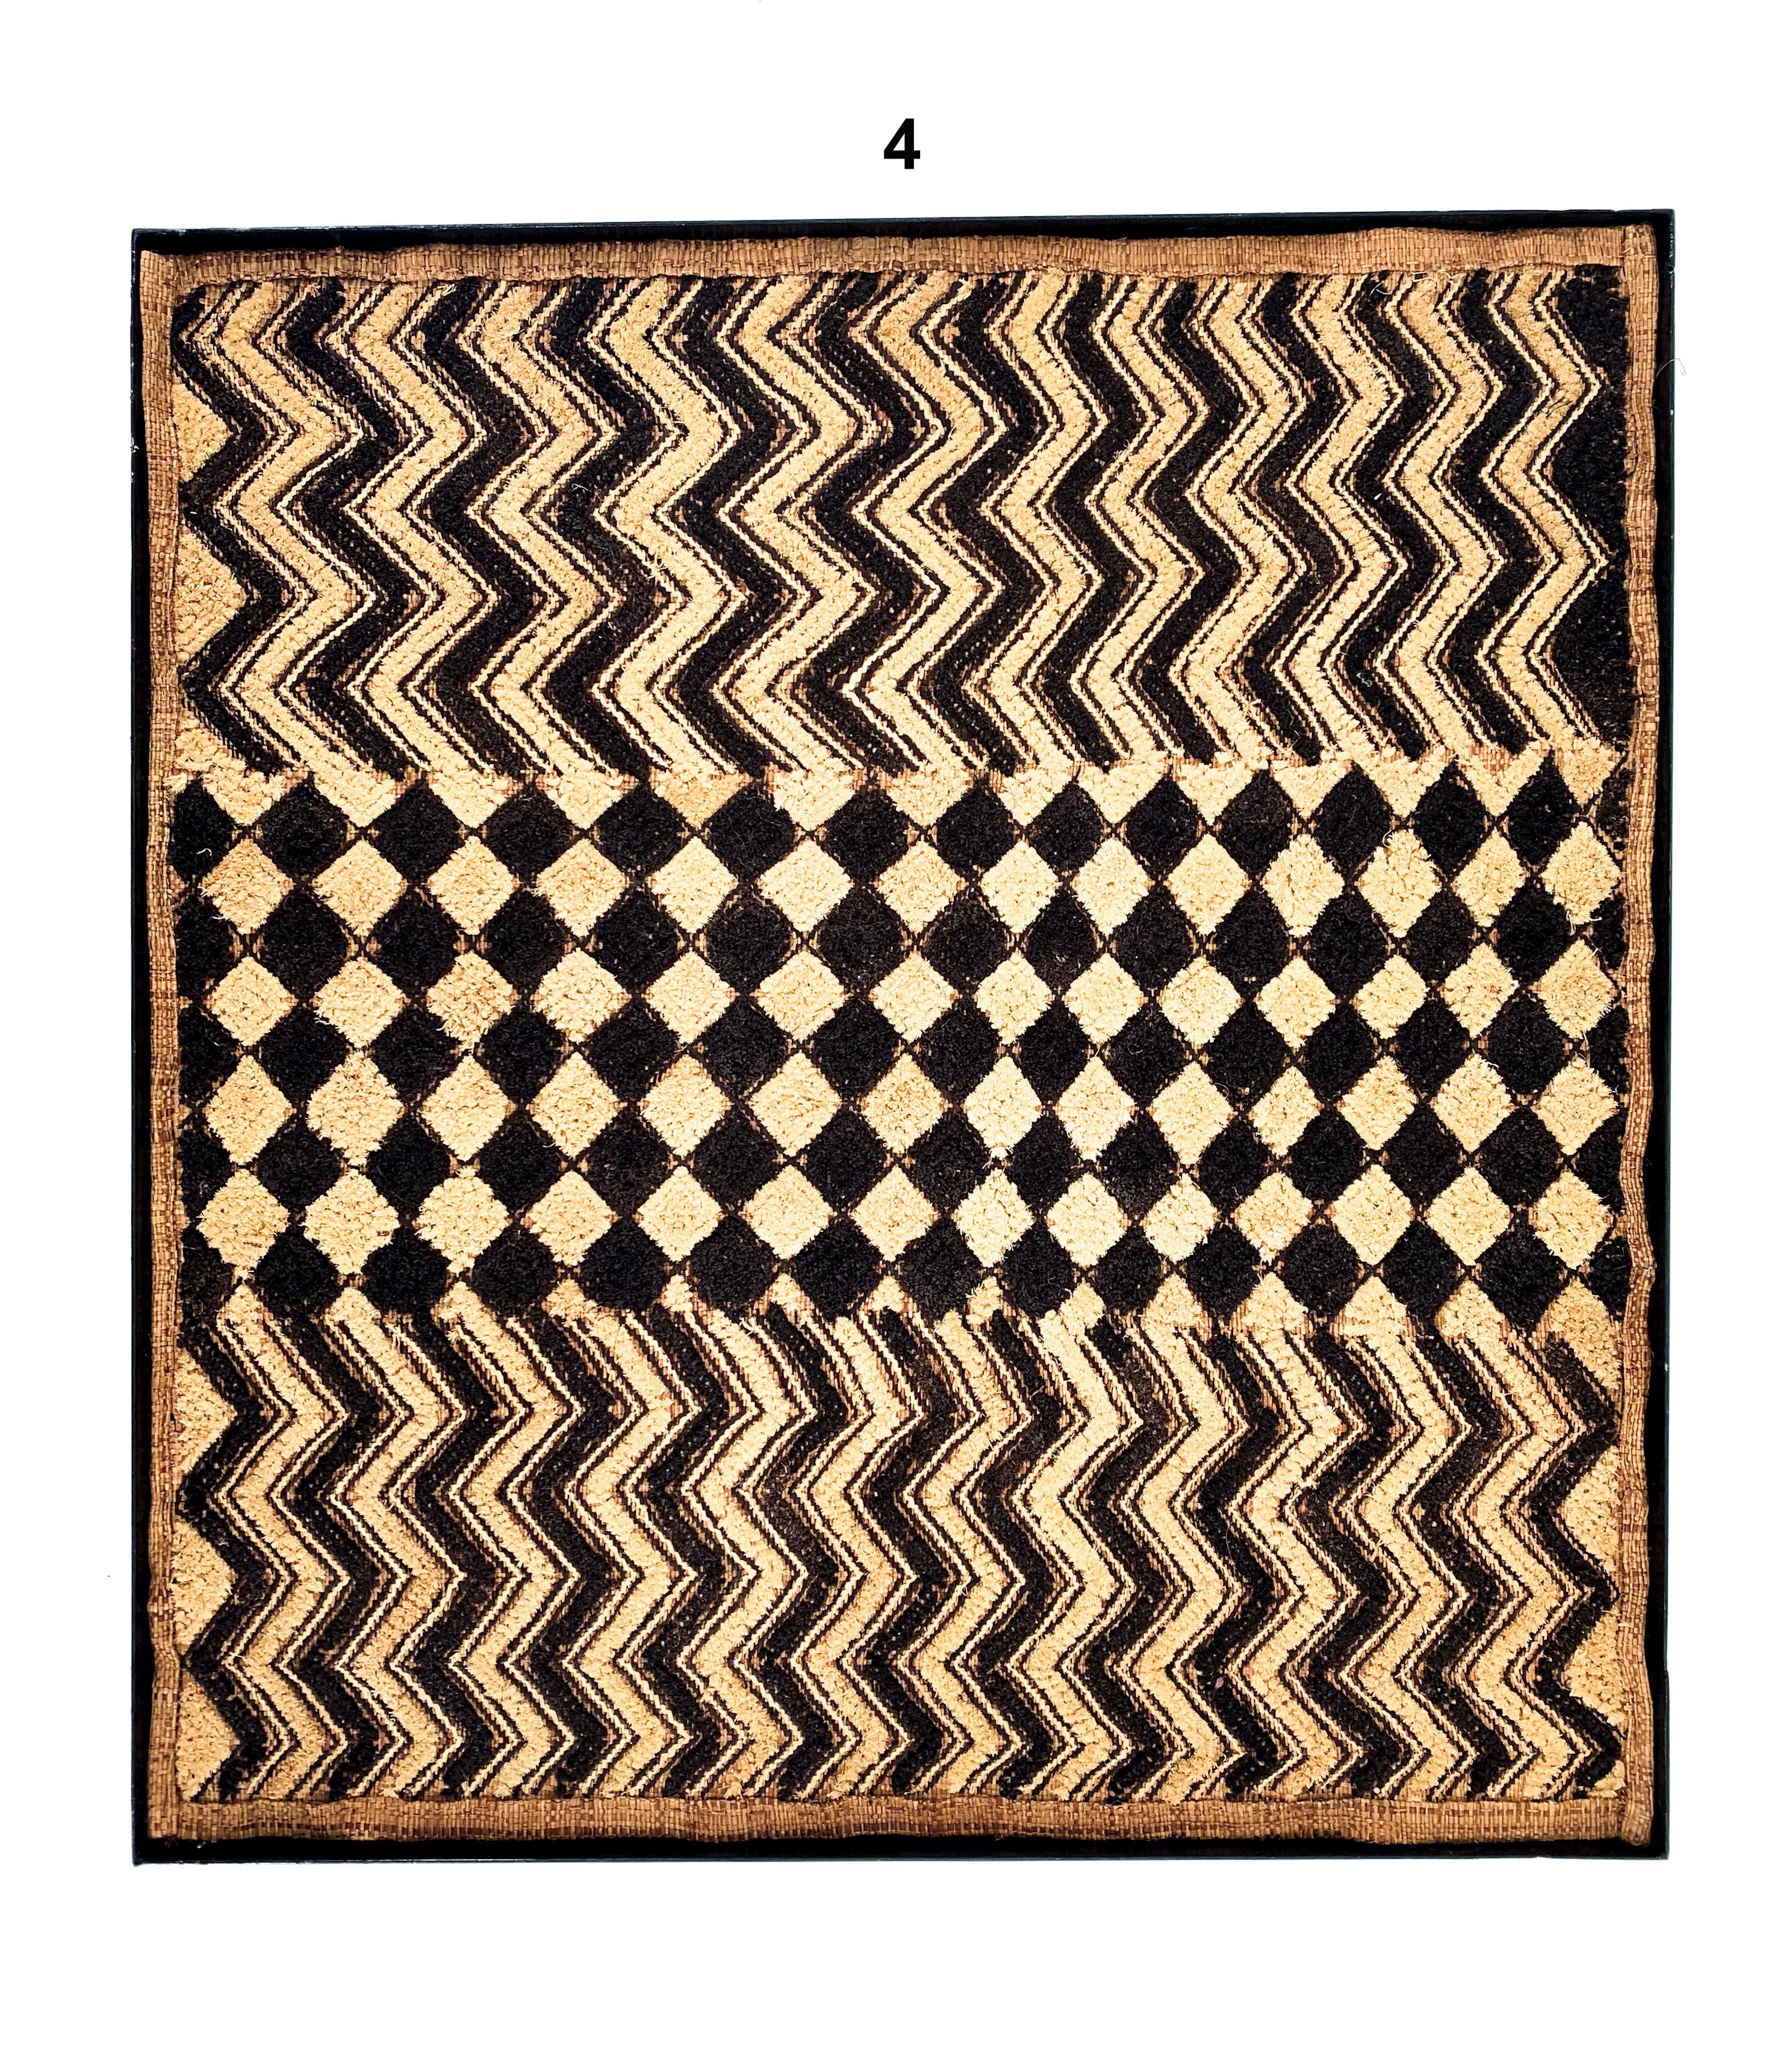 Kasai velvet / Kuba cloth framed